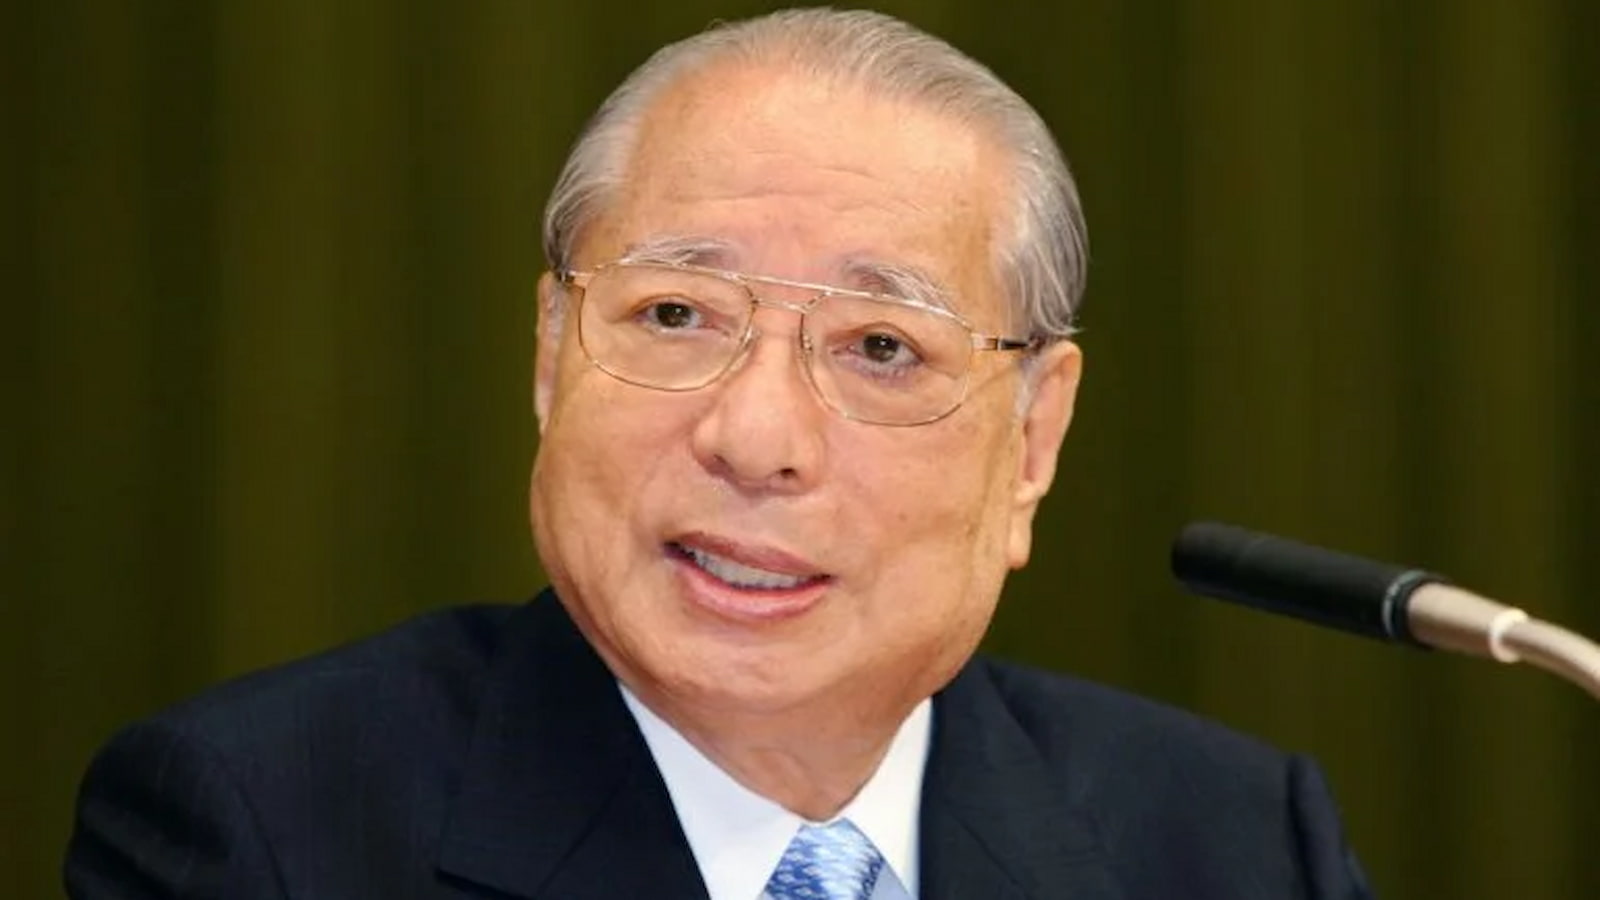 Daisaku Ikeda